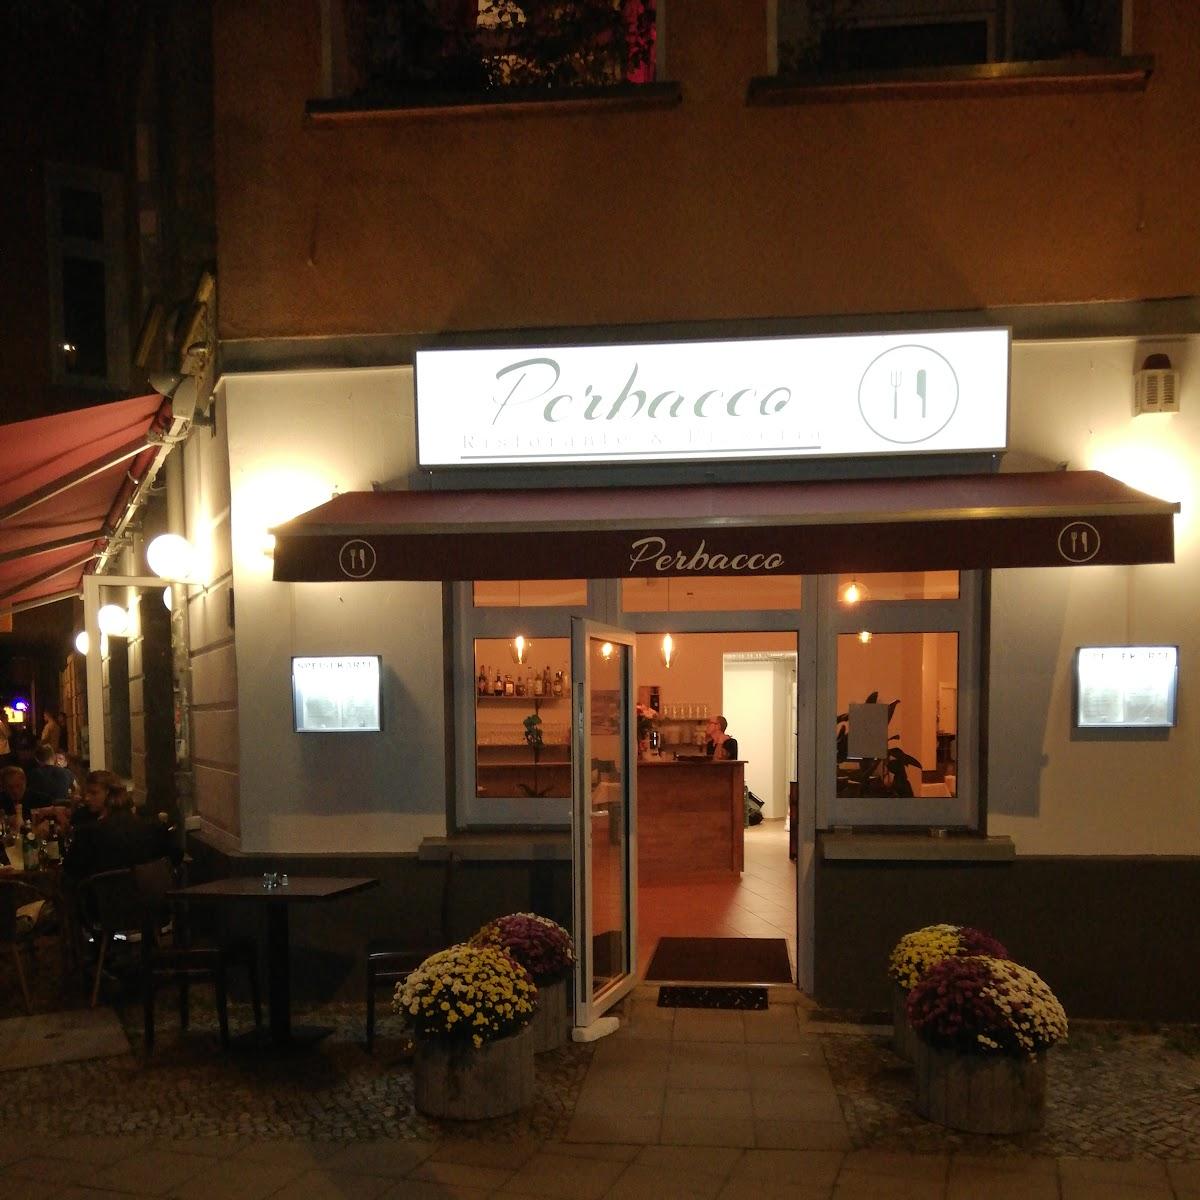 Restaurant "Perbacco Ristorante & Pizzeria" in Berlin